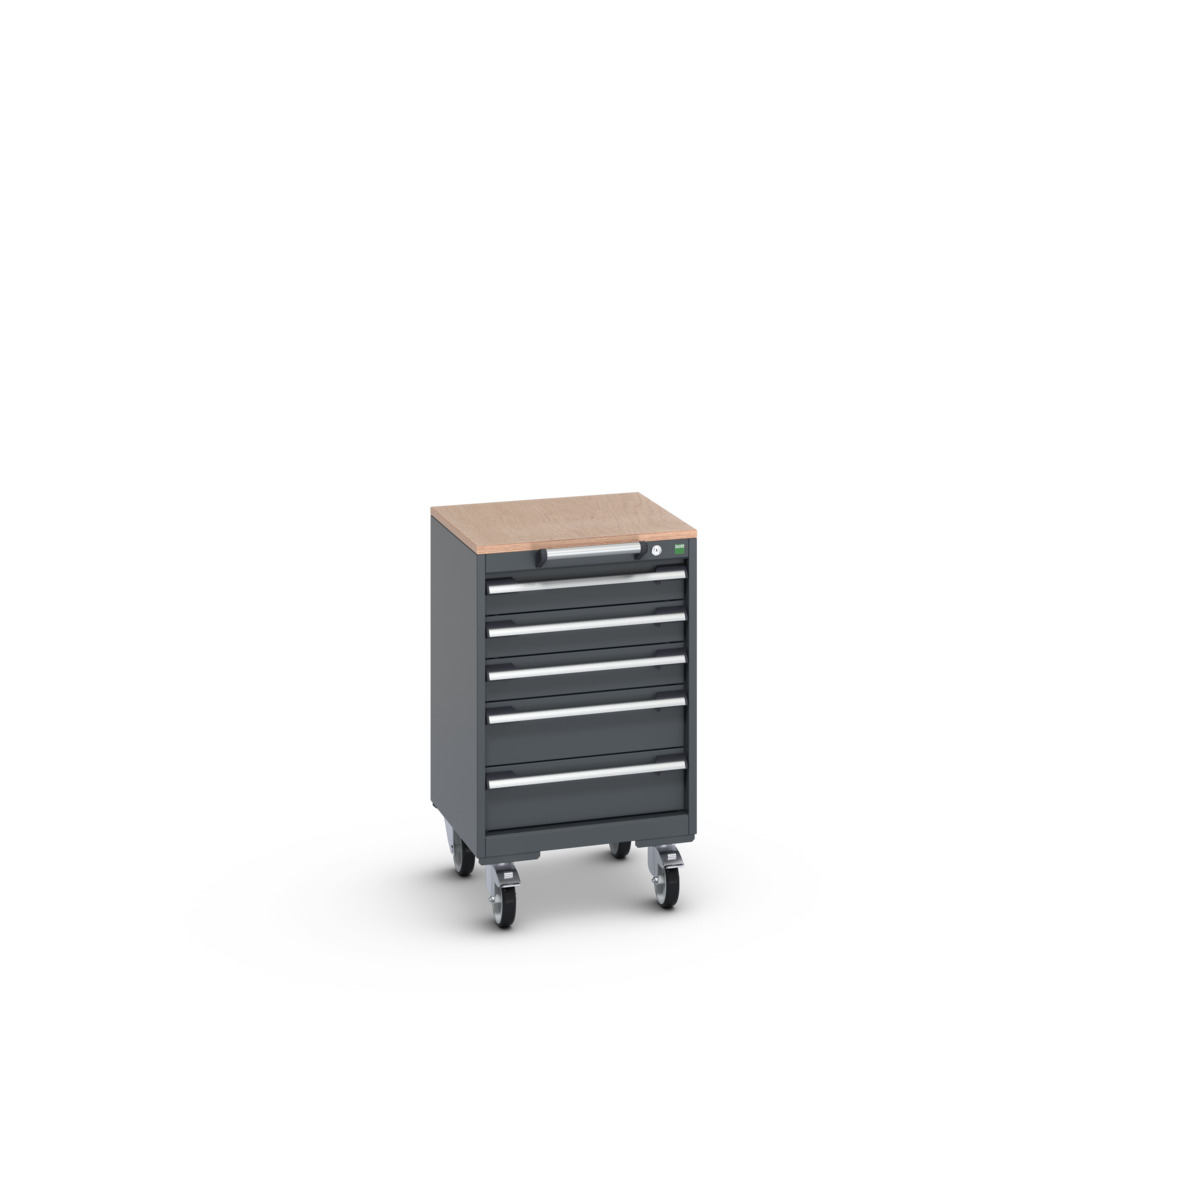 40402137.77V - cubio mobile cabinet